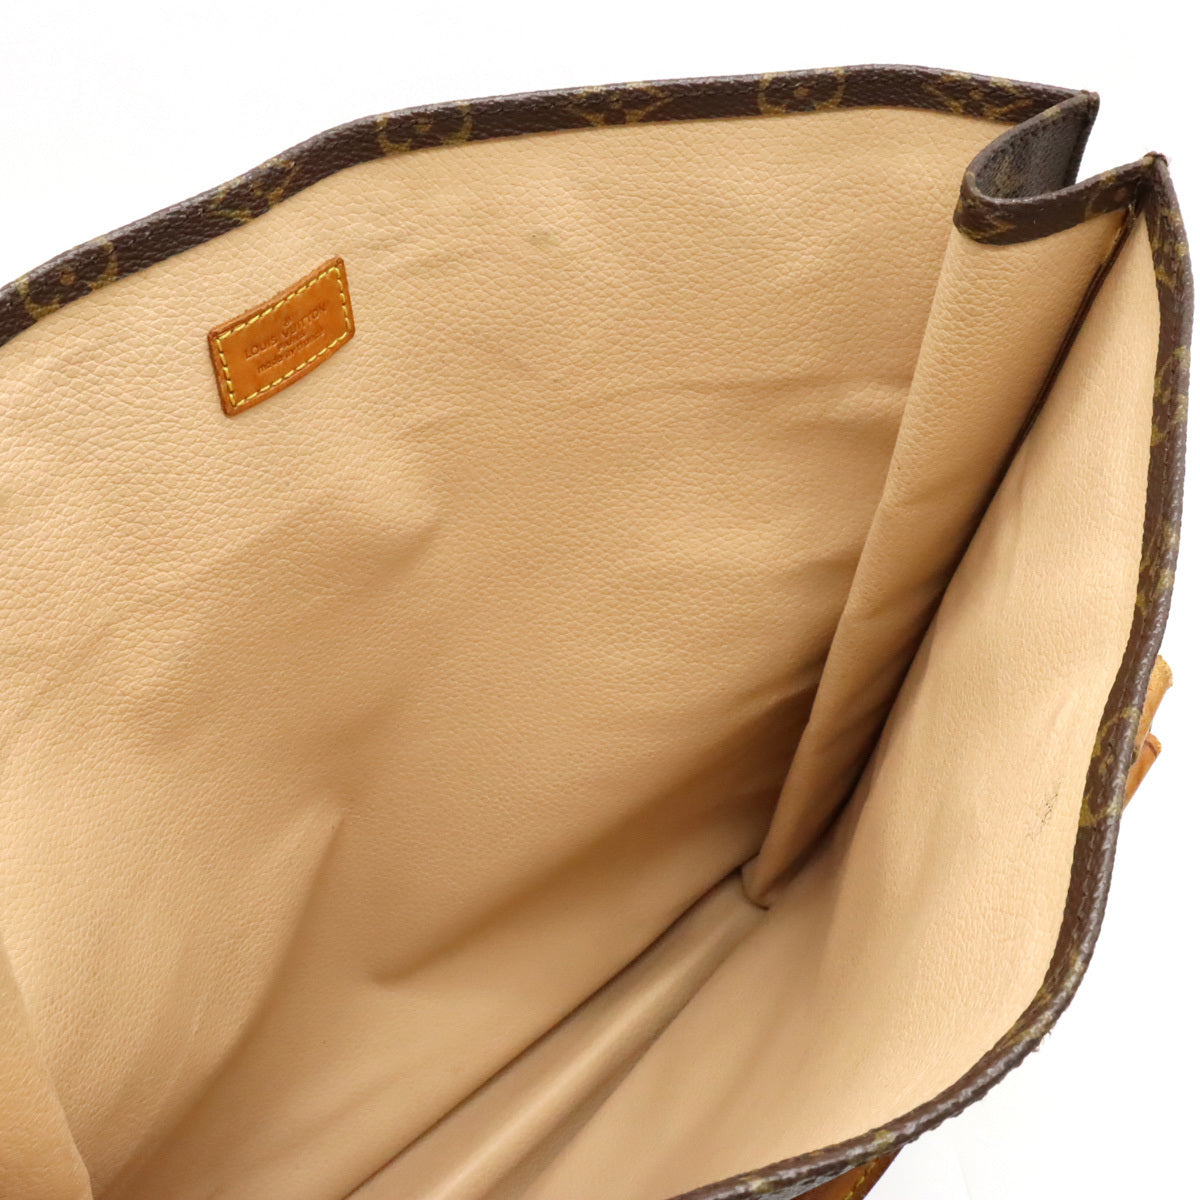 Louis Vuitton Authentic Vintage Iconic Sac Plat Tote Bag Mint Condition